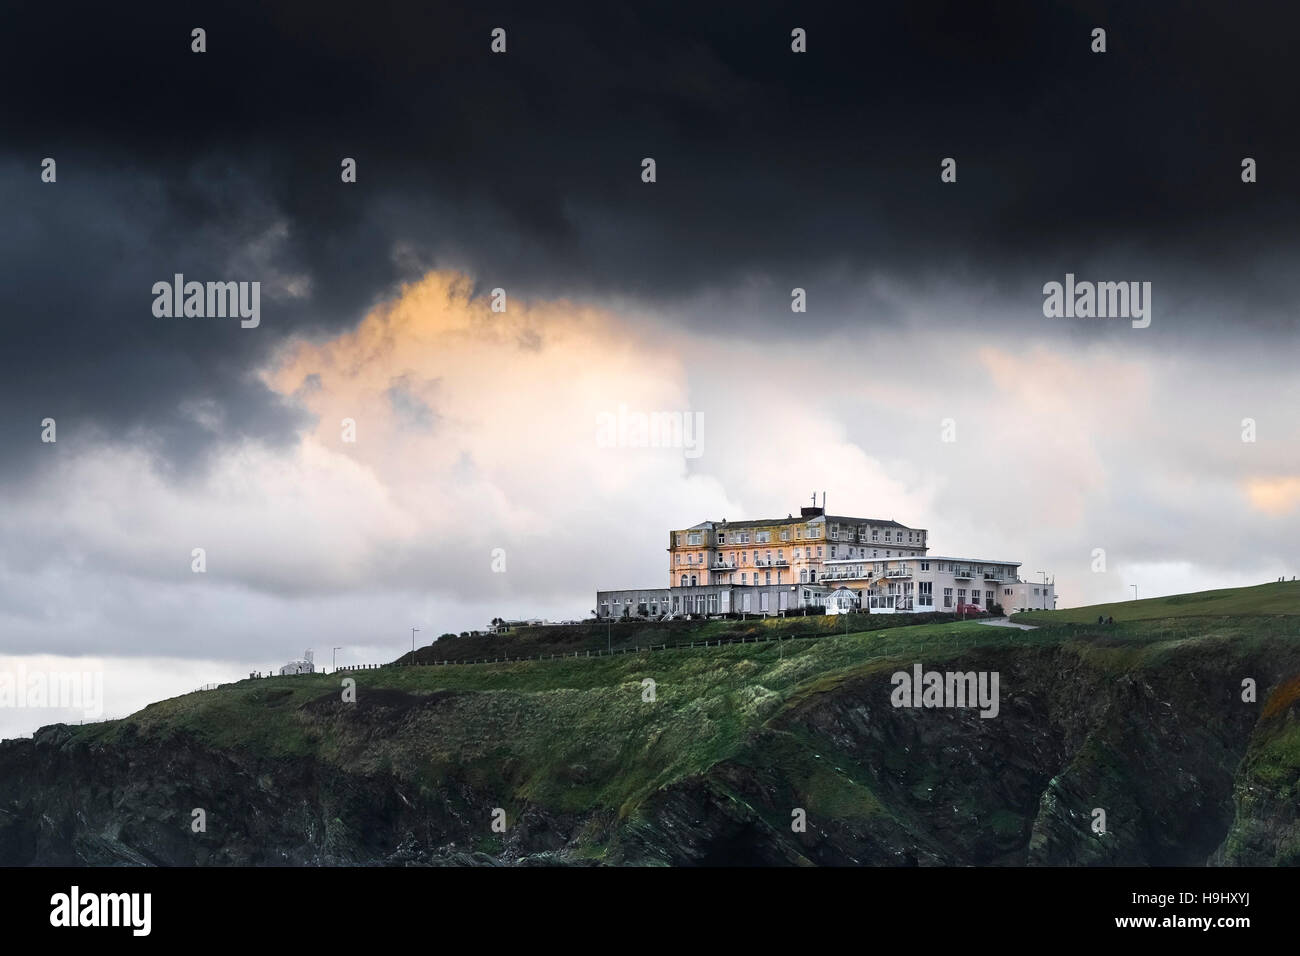 Dunkle Wolken aus einem Sturm, der sich über Das Atlantic Hotel in Newquay, Cornwall versammelt. Wetter in Großbritannien. Stockfoto